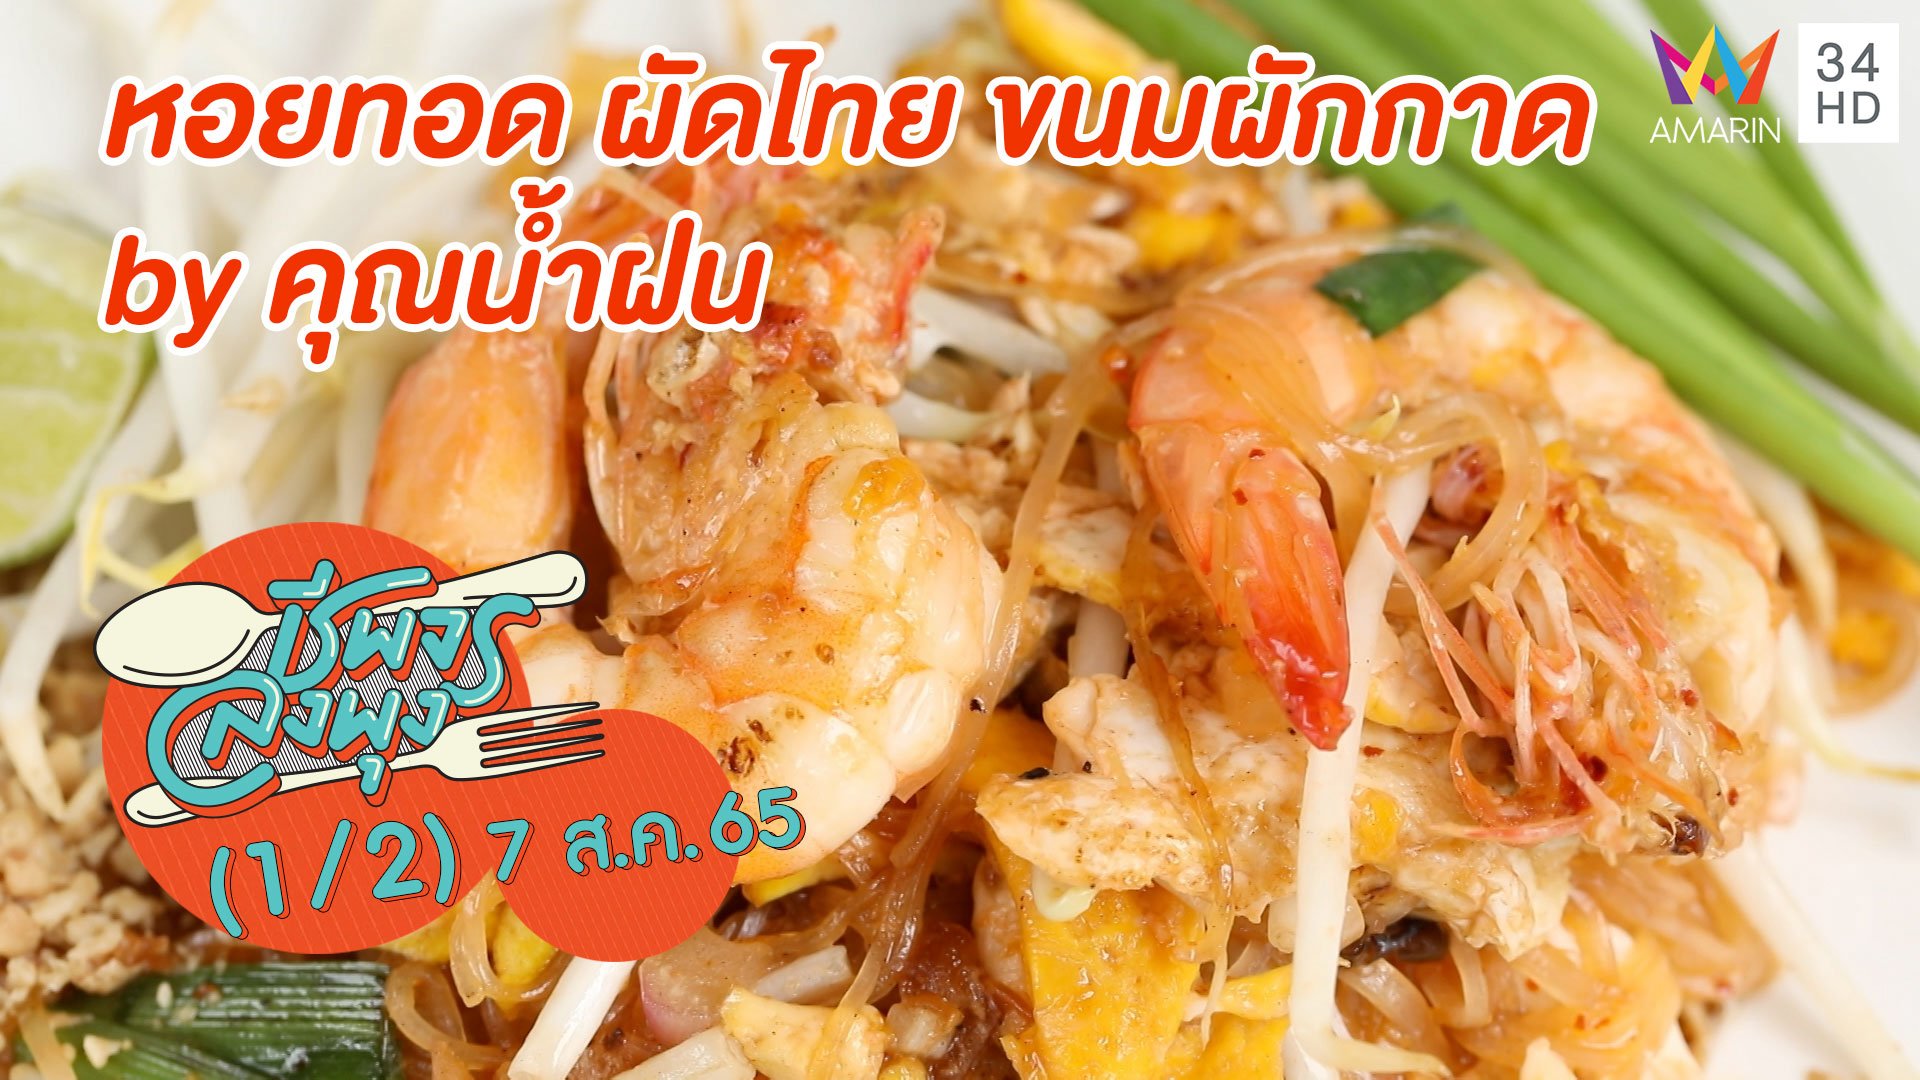 ผัดไทยหอยทอดสูตรเด็ด @ ร้านหอยทอด ผัดไทย ขนมผักกาด by คุณน้ำฝน | ชีพจรลงพุง | 7 ส.ค. 65 (1/2) | AMARIN TVHD34